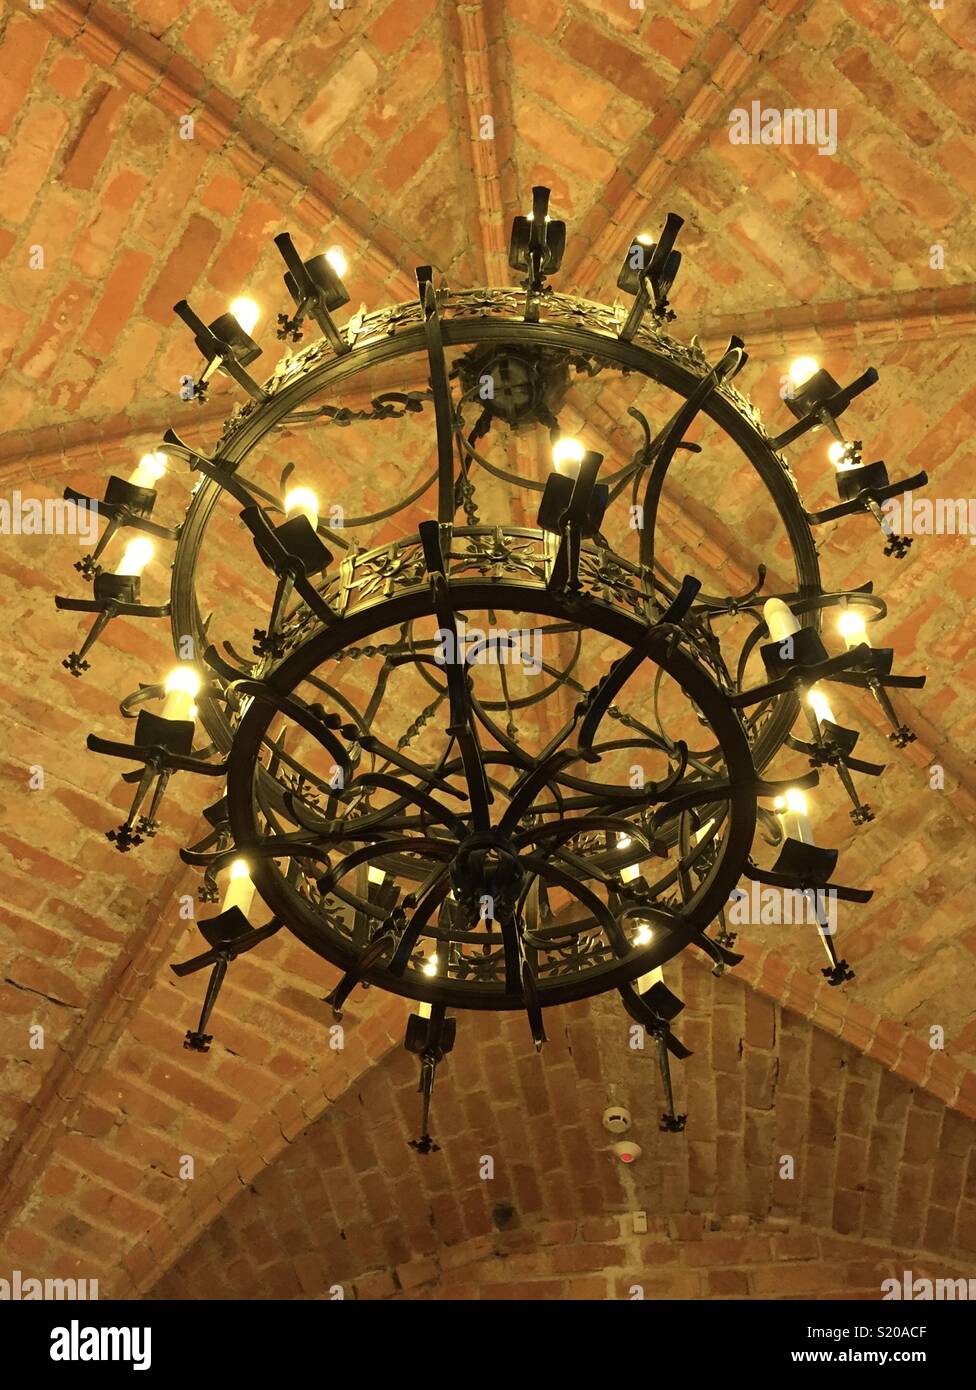 Medieval chandelier immagini e fotografie stock ad alta risoluzione - Alamy